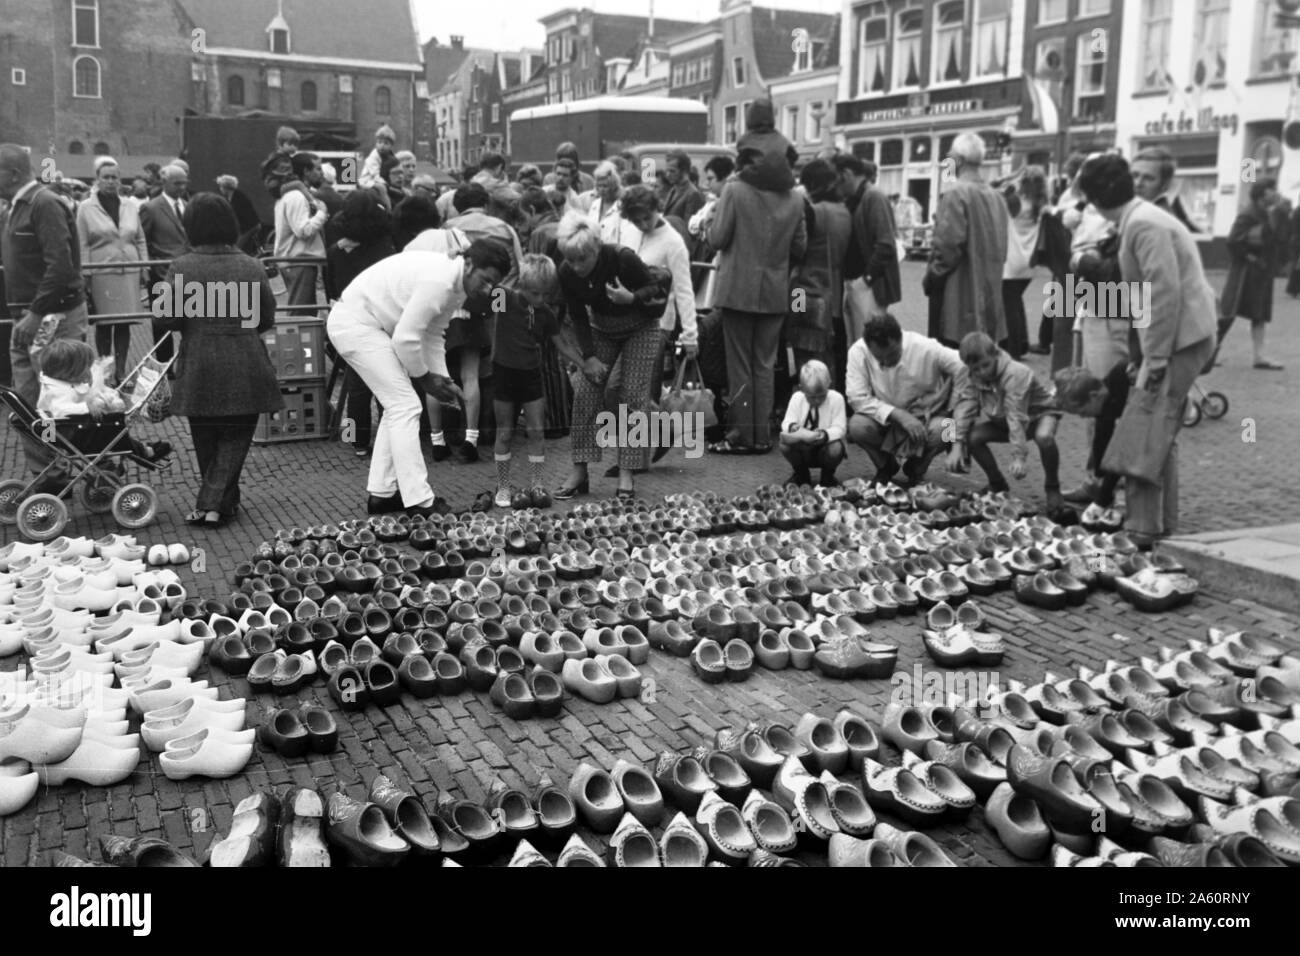 Verkauf von den klassischen holländischen Klompen, Alkmaar Niederlande 1971. Selling of the traditional dutch Klomps, Alkmaar Netherlands 1971. Stock Photo